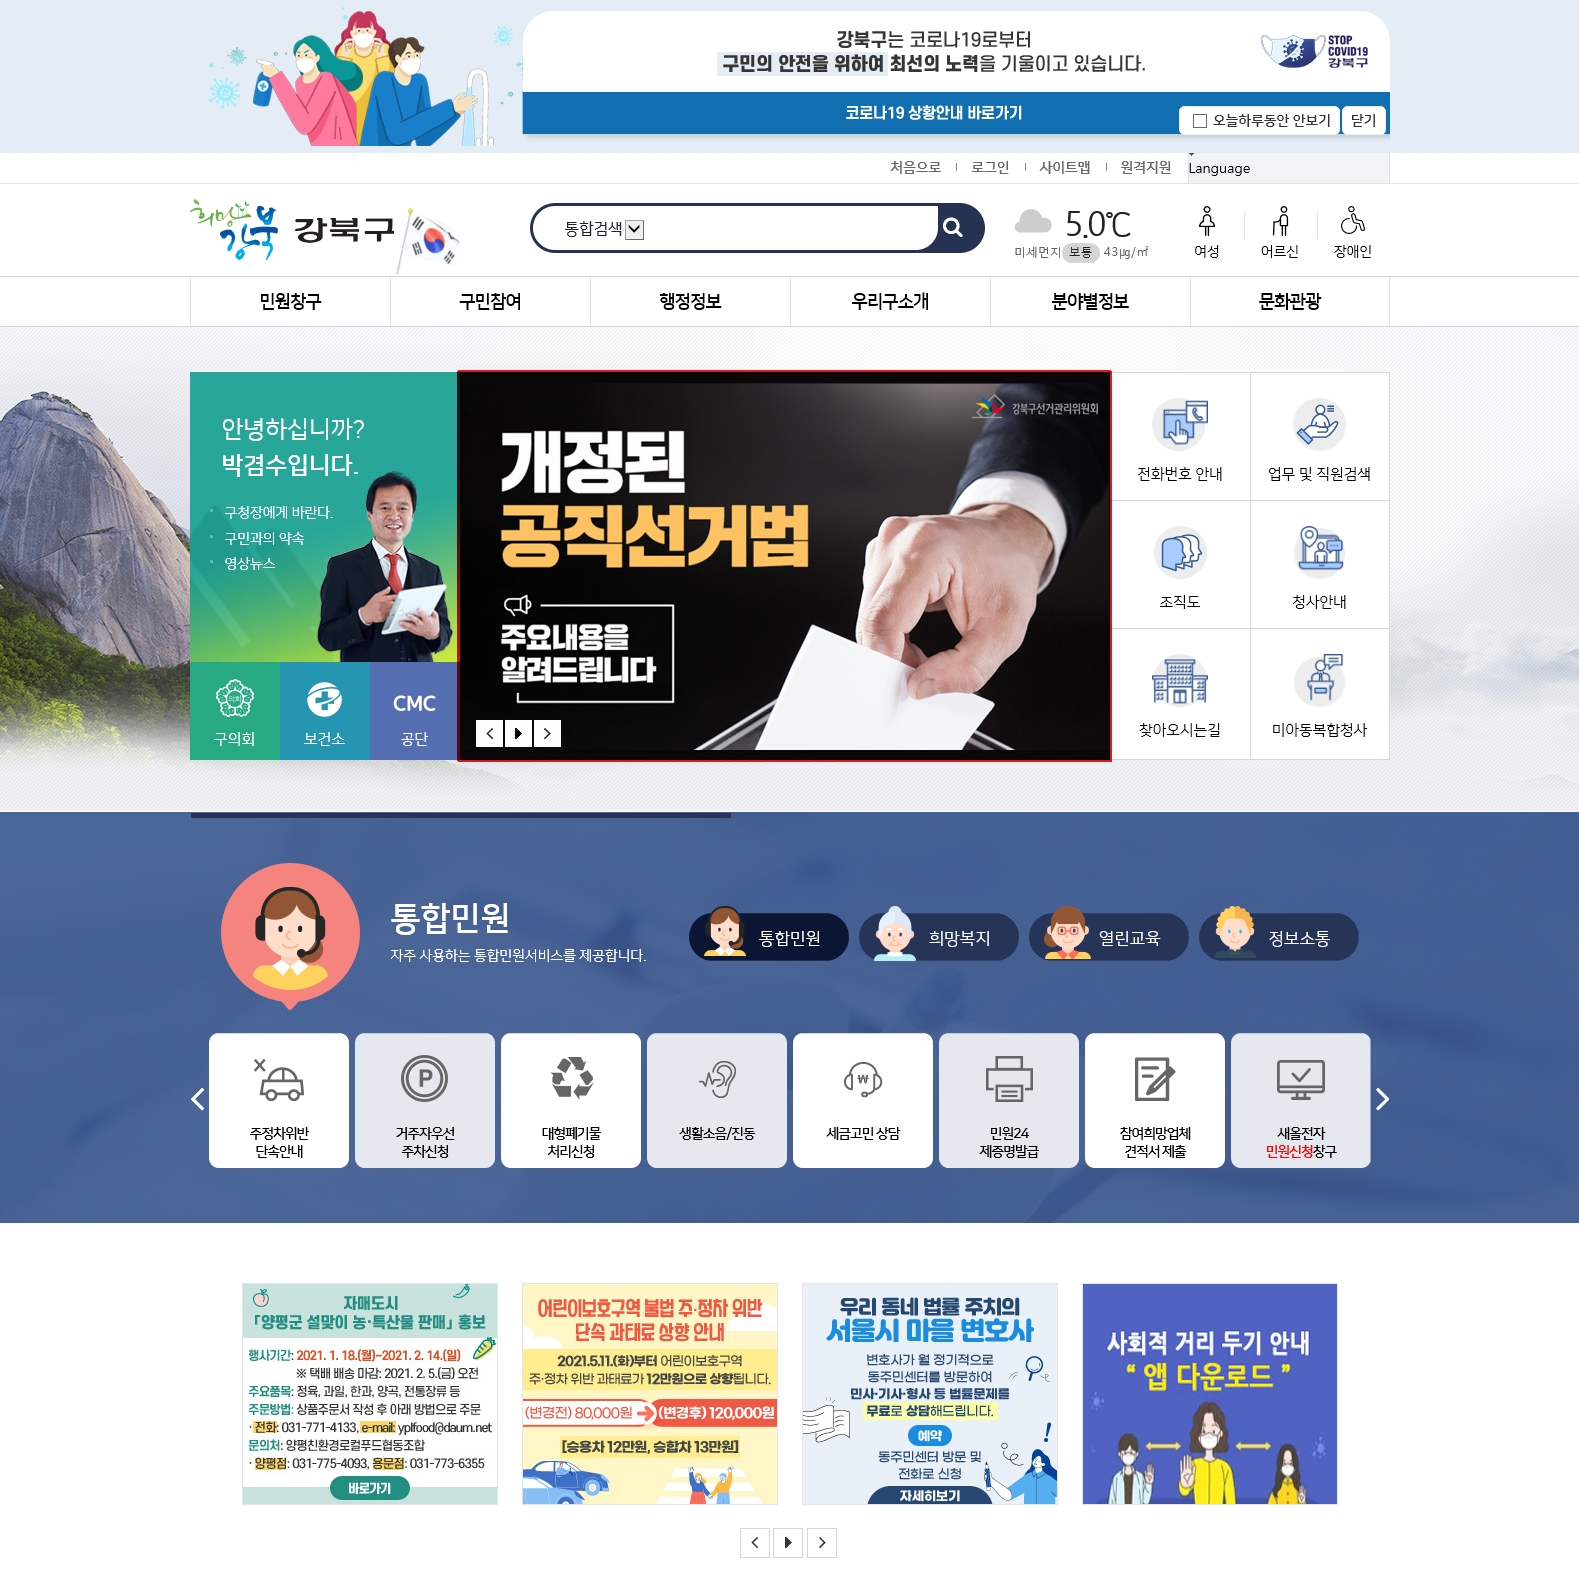 강북구선거관리위원회는 공직선거법 개정 주요내용 안내 배너를 강북구청 홈페이지에 게시하였습니다.